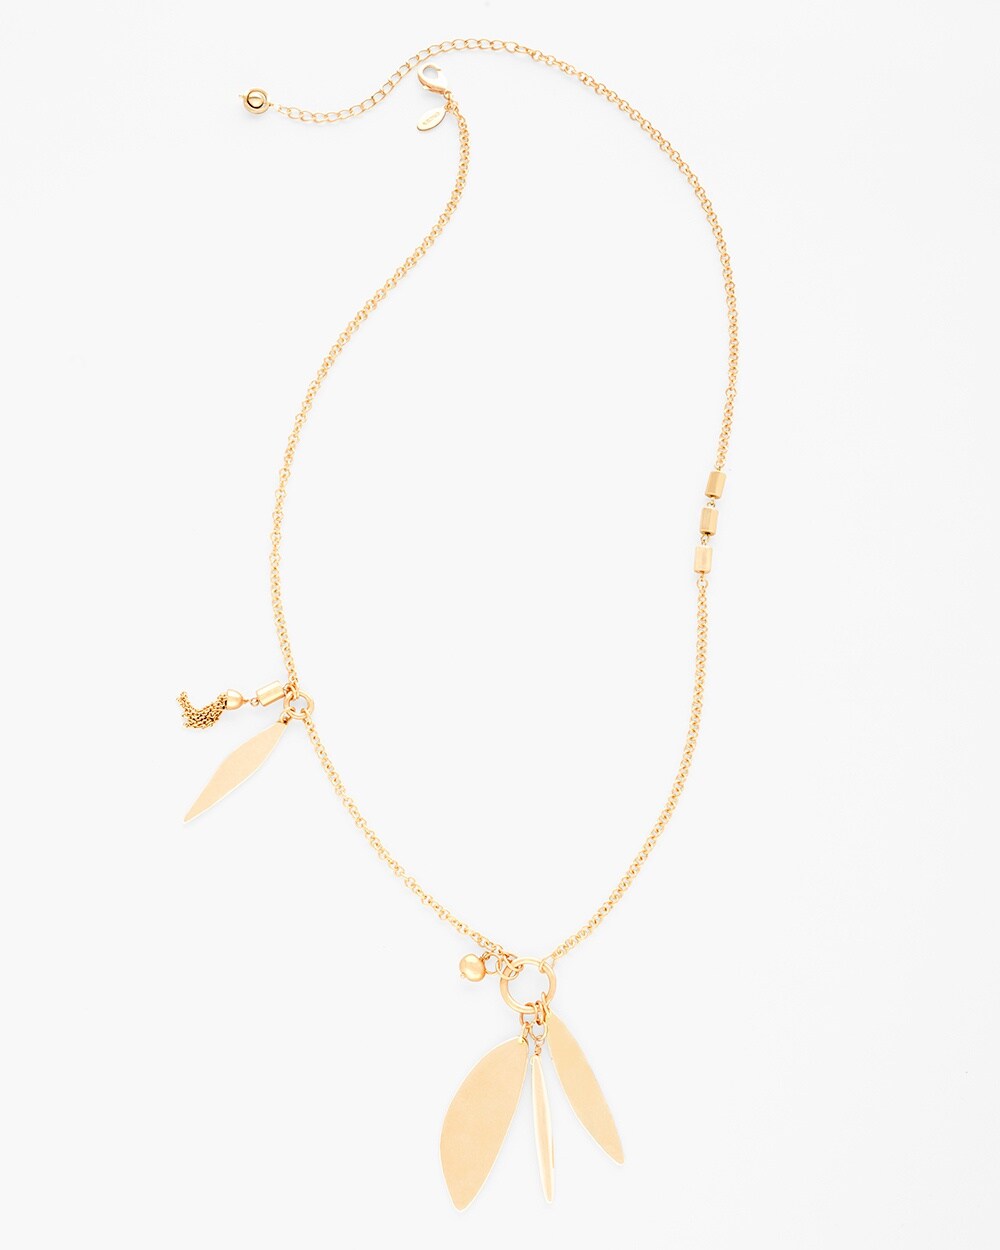 Laurel Charm Necklace